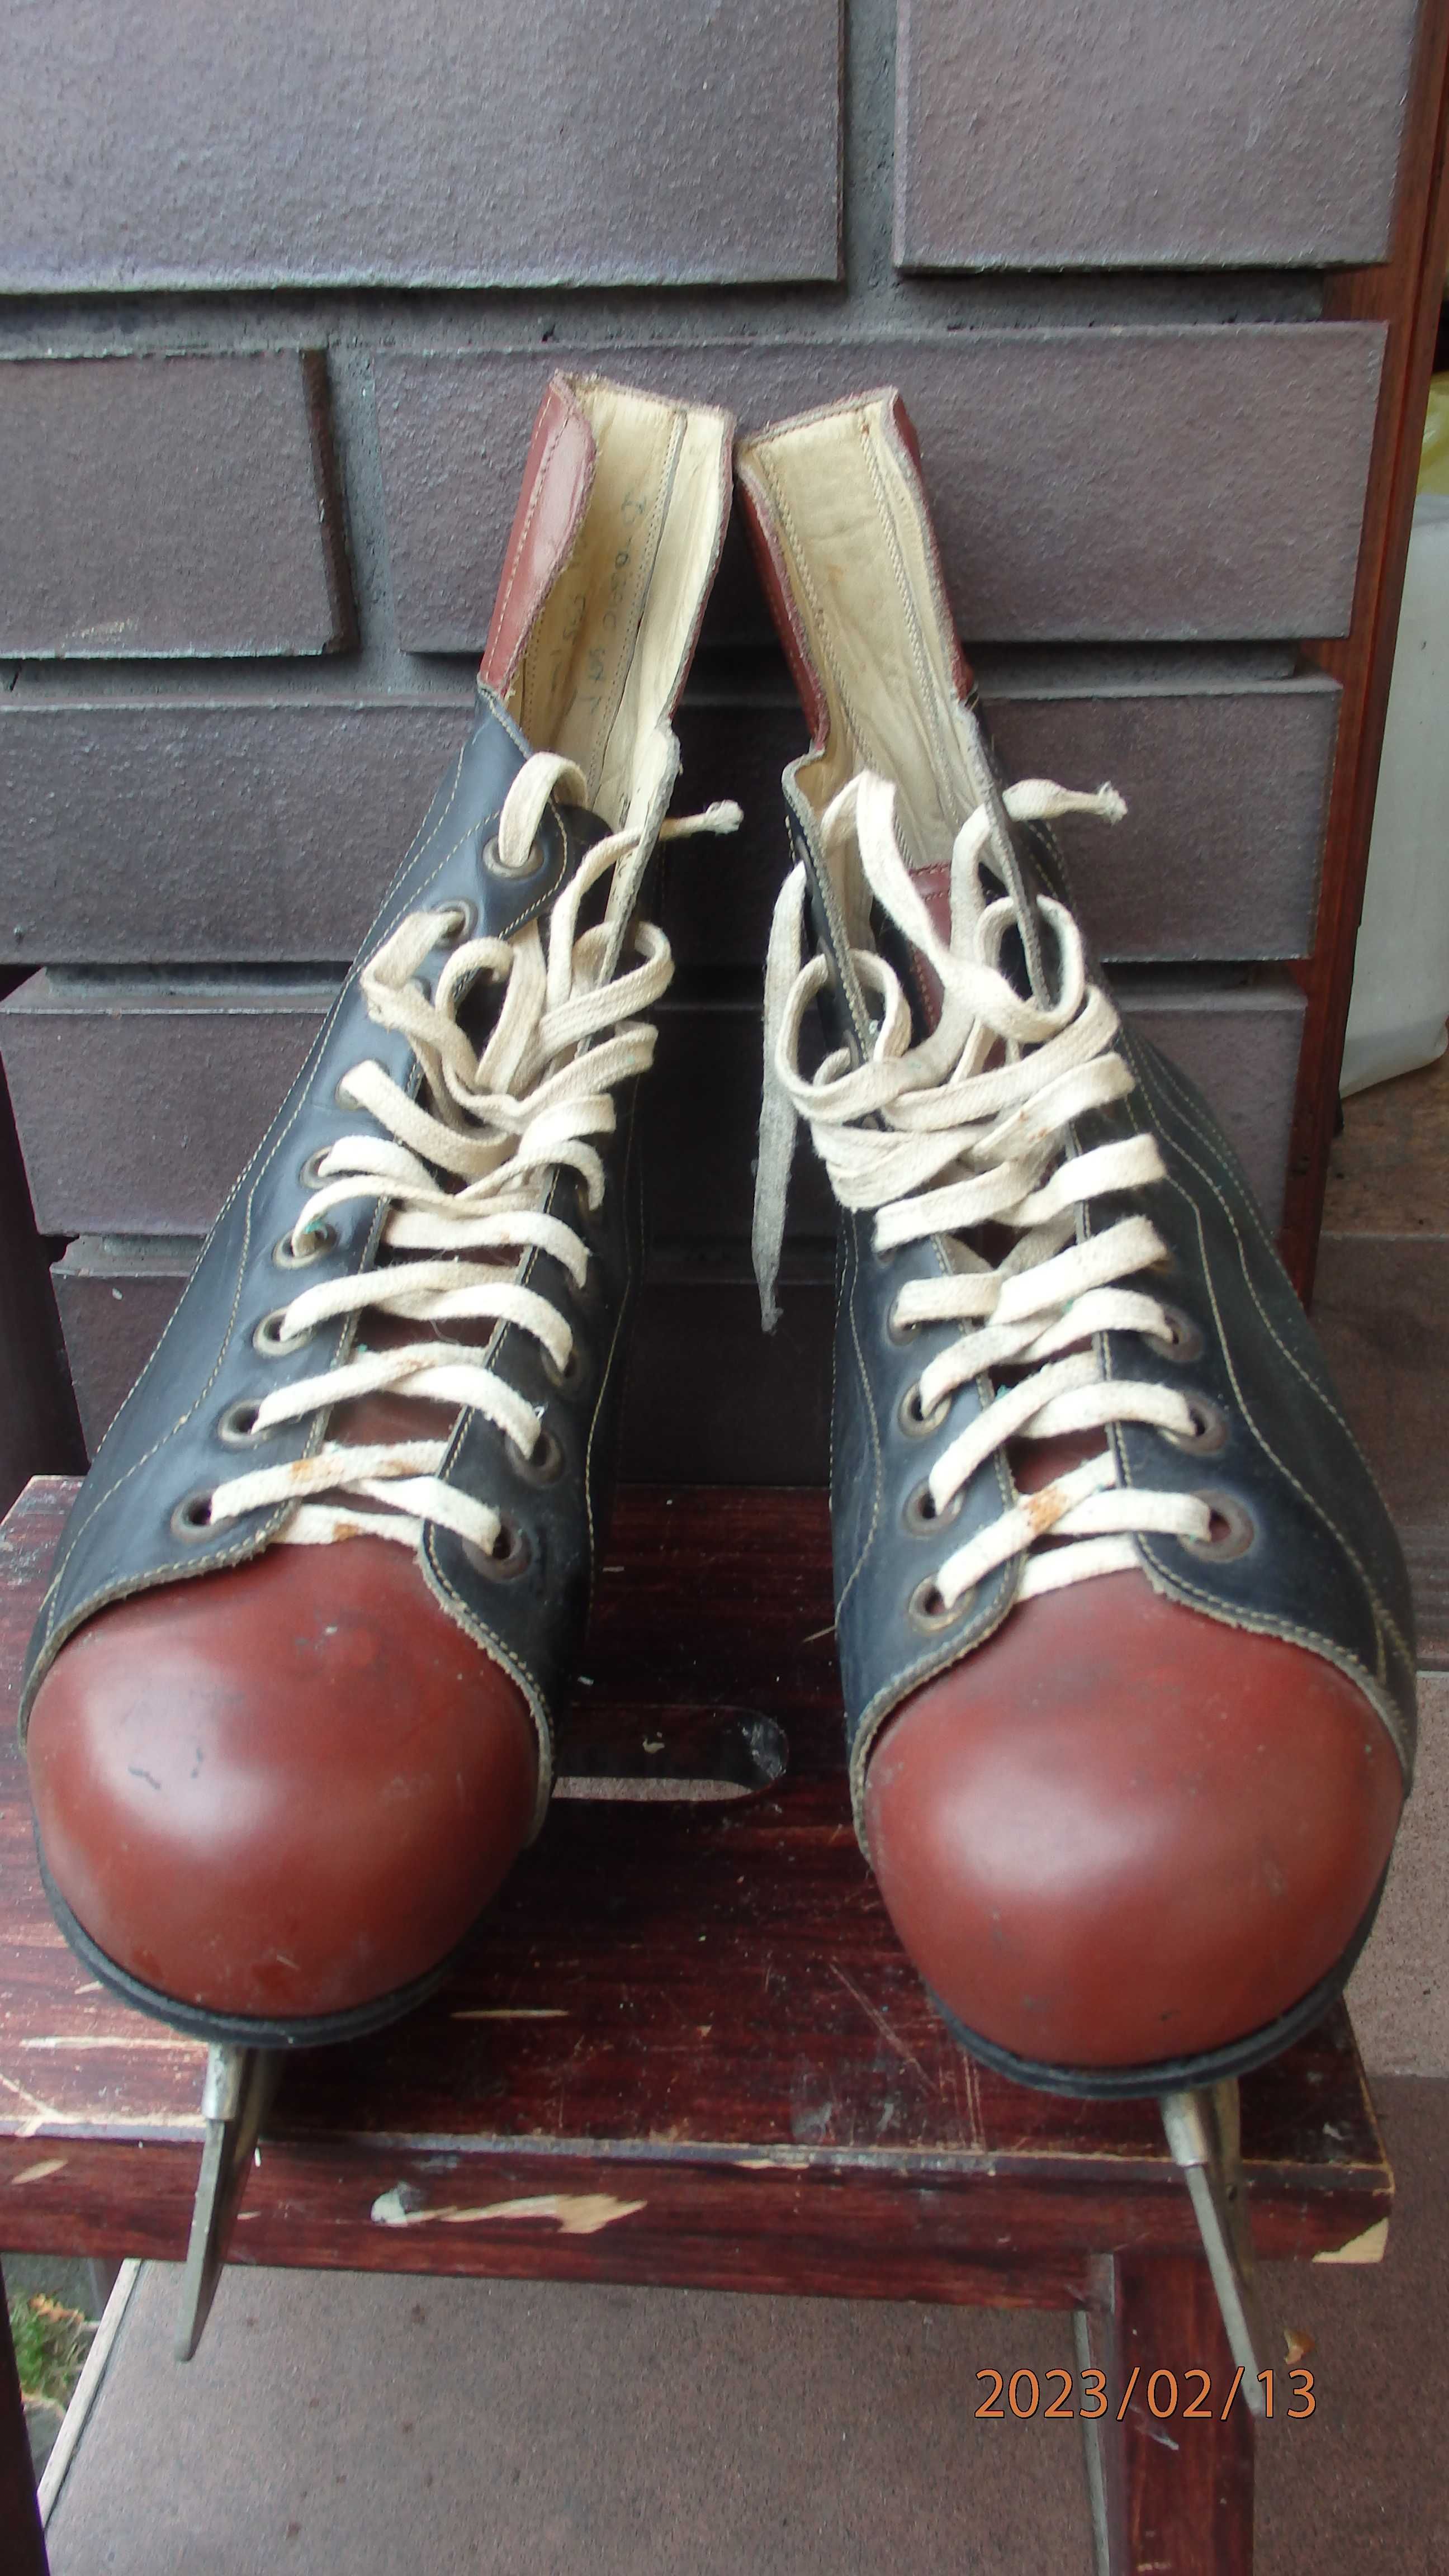 Buty z łyżwami - Fabos Krosno oryginalne ze skóry. Rozmiar 42.